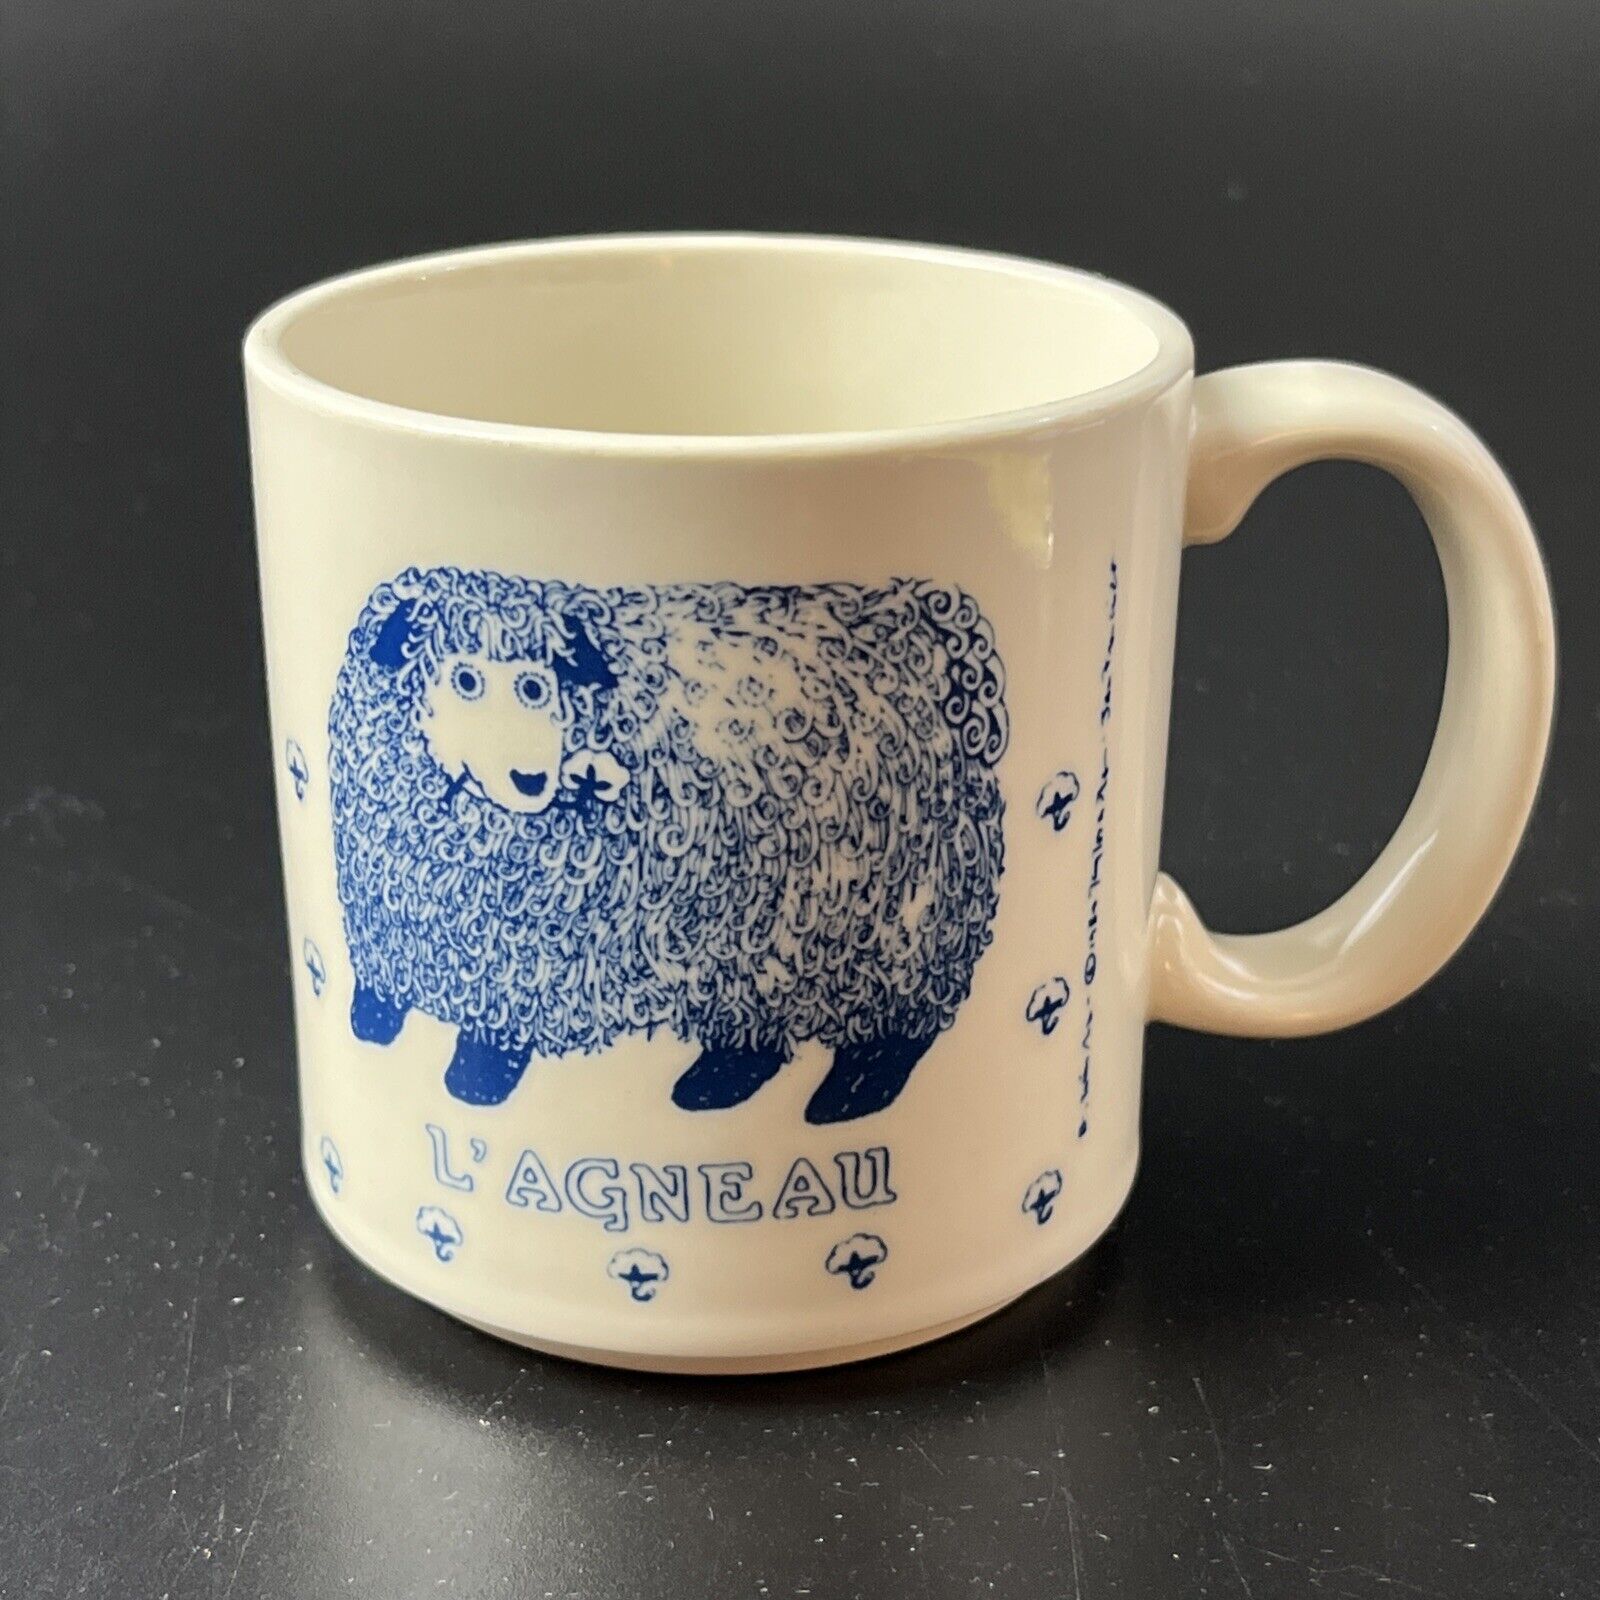 Vintage Taylor & Ng Le Agneau Blue White Lamb Sheep Mug 1984 San Francisco Japan